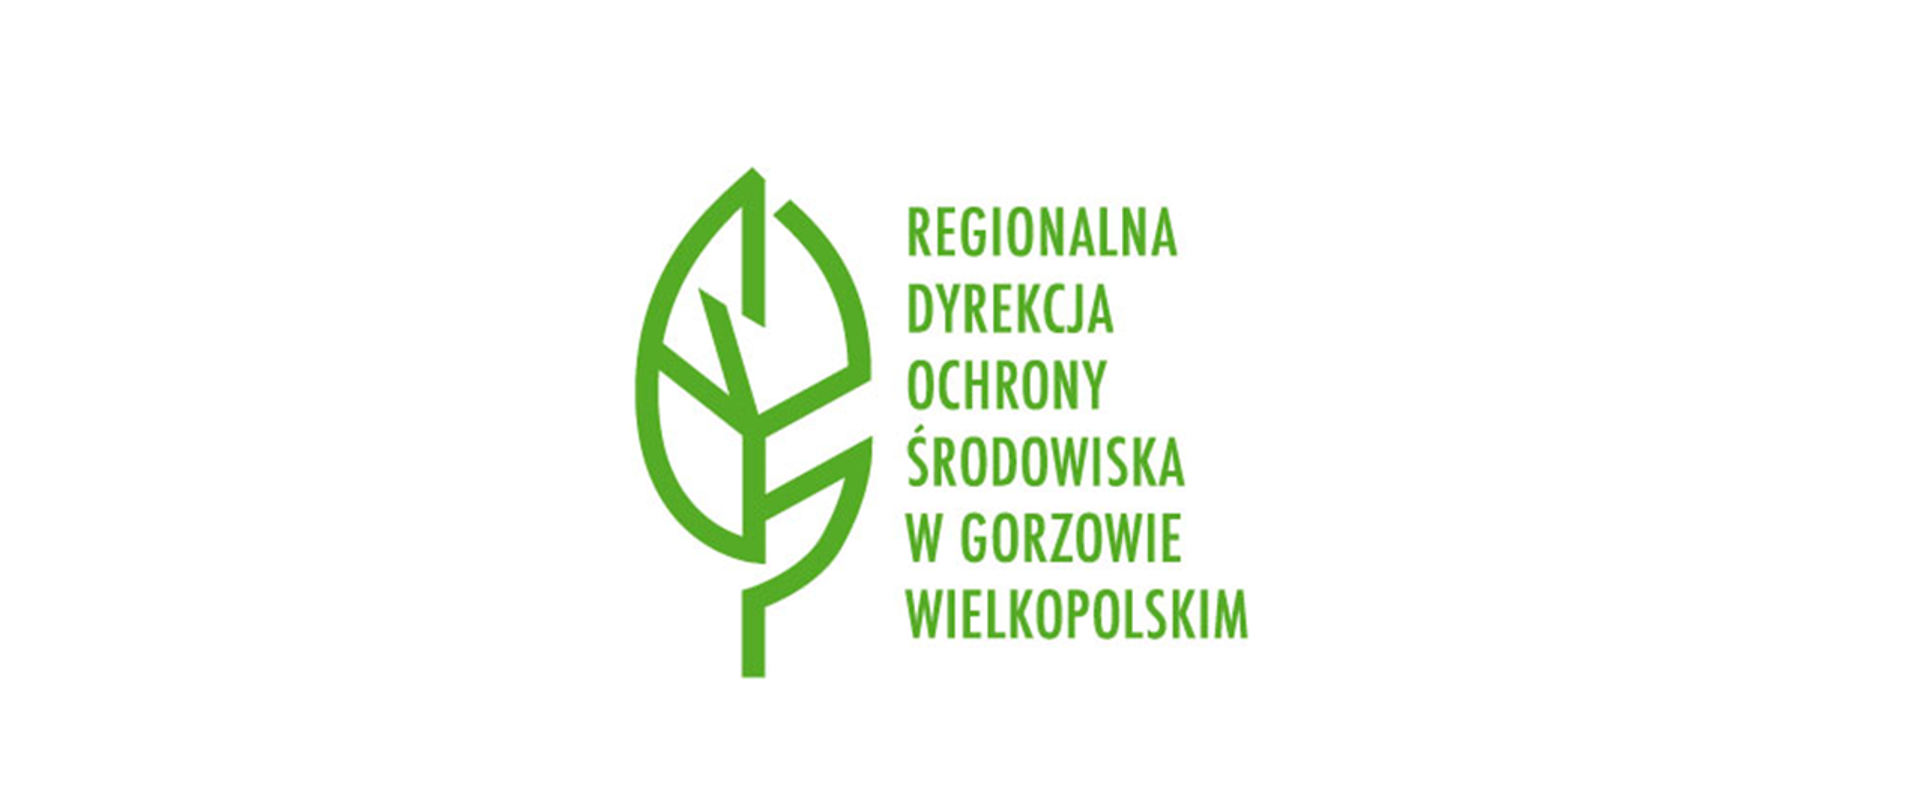 Po lewej stronie zielony liść, po prawej napis Regionalna Dyrekcja Ochrony Środowiska w Gorzowie Wielkopolskim 